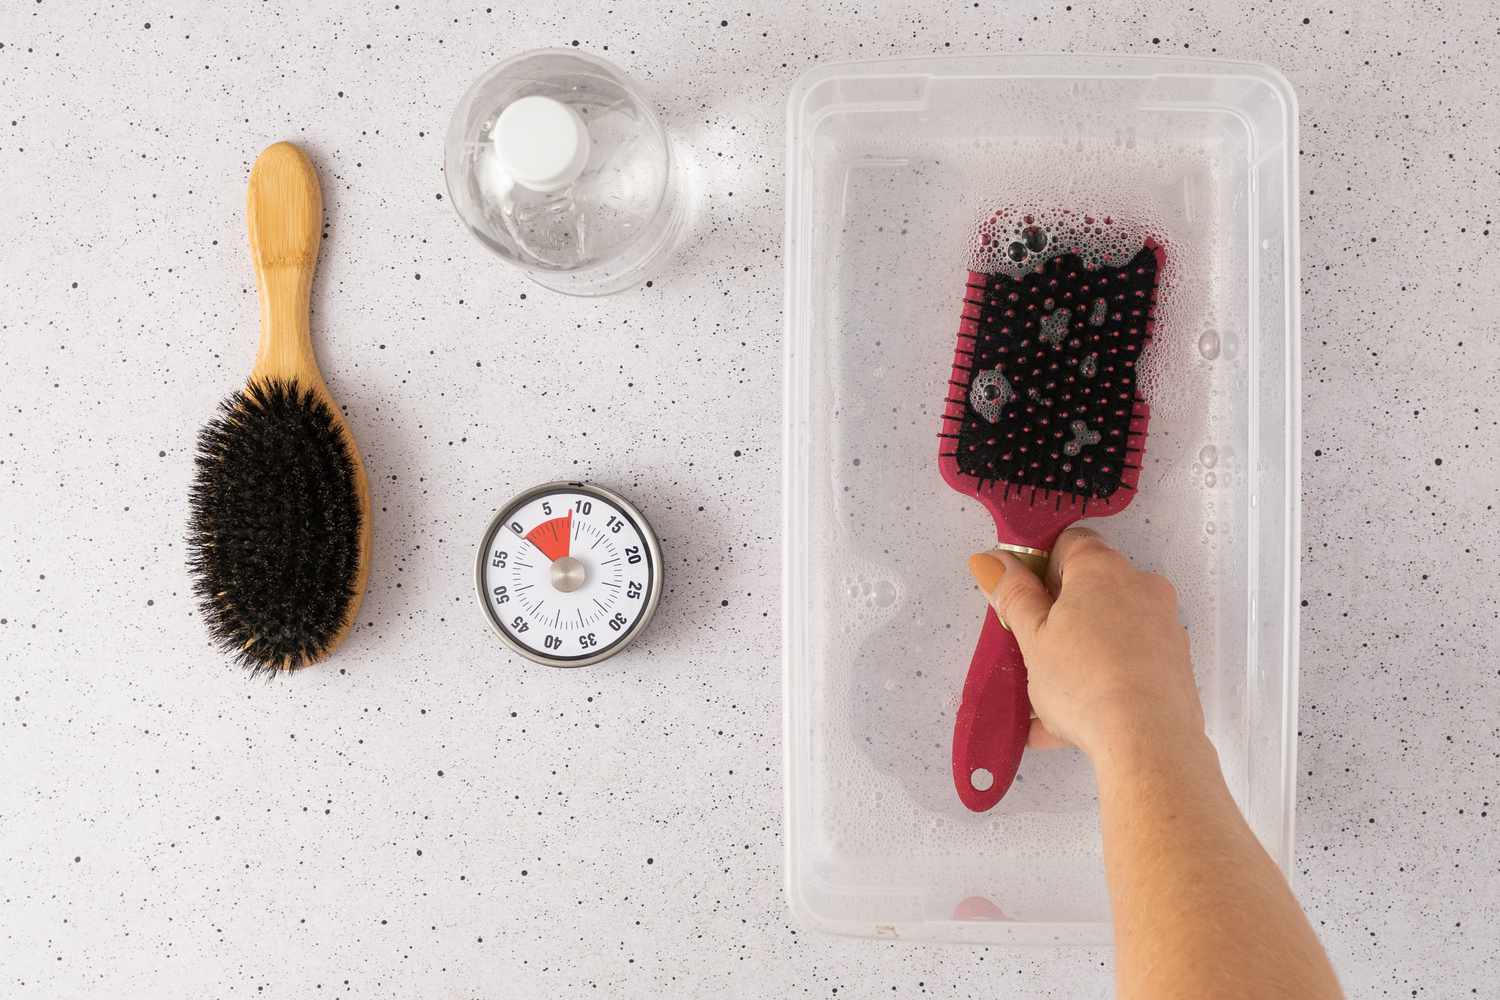 Remojar un cepillo de pelo en una solución limpiadora